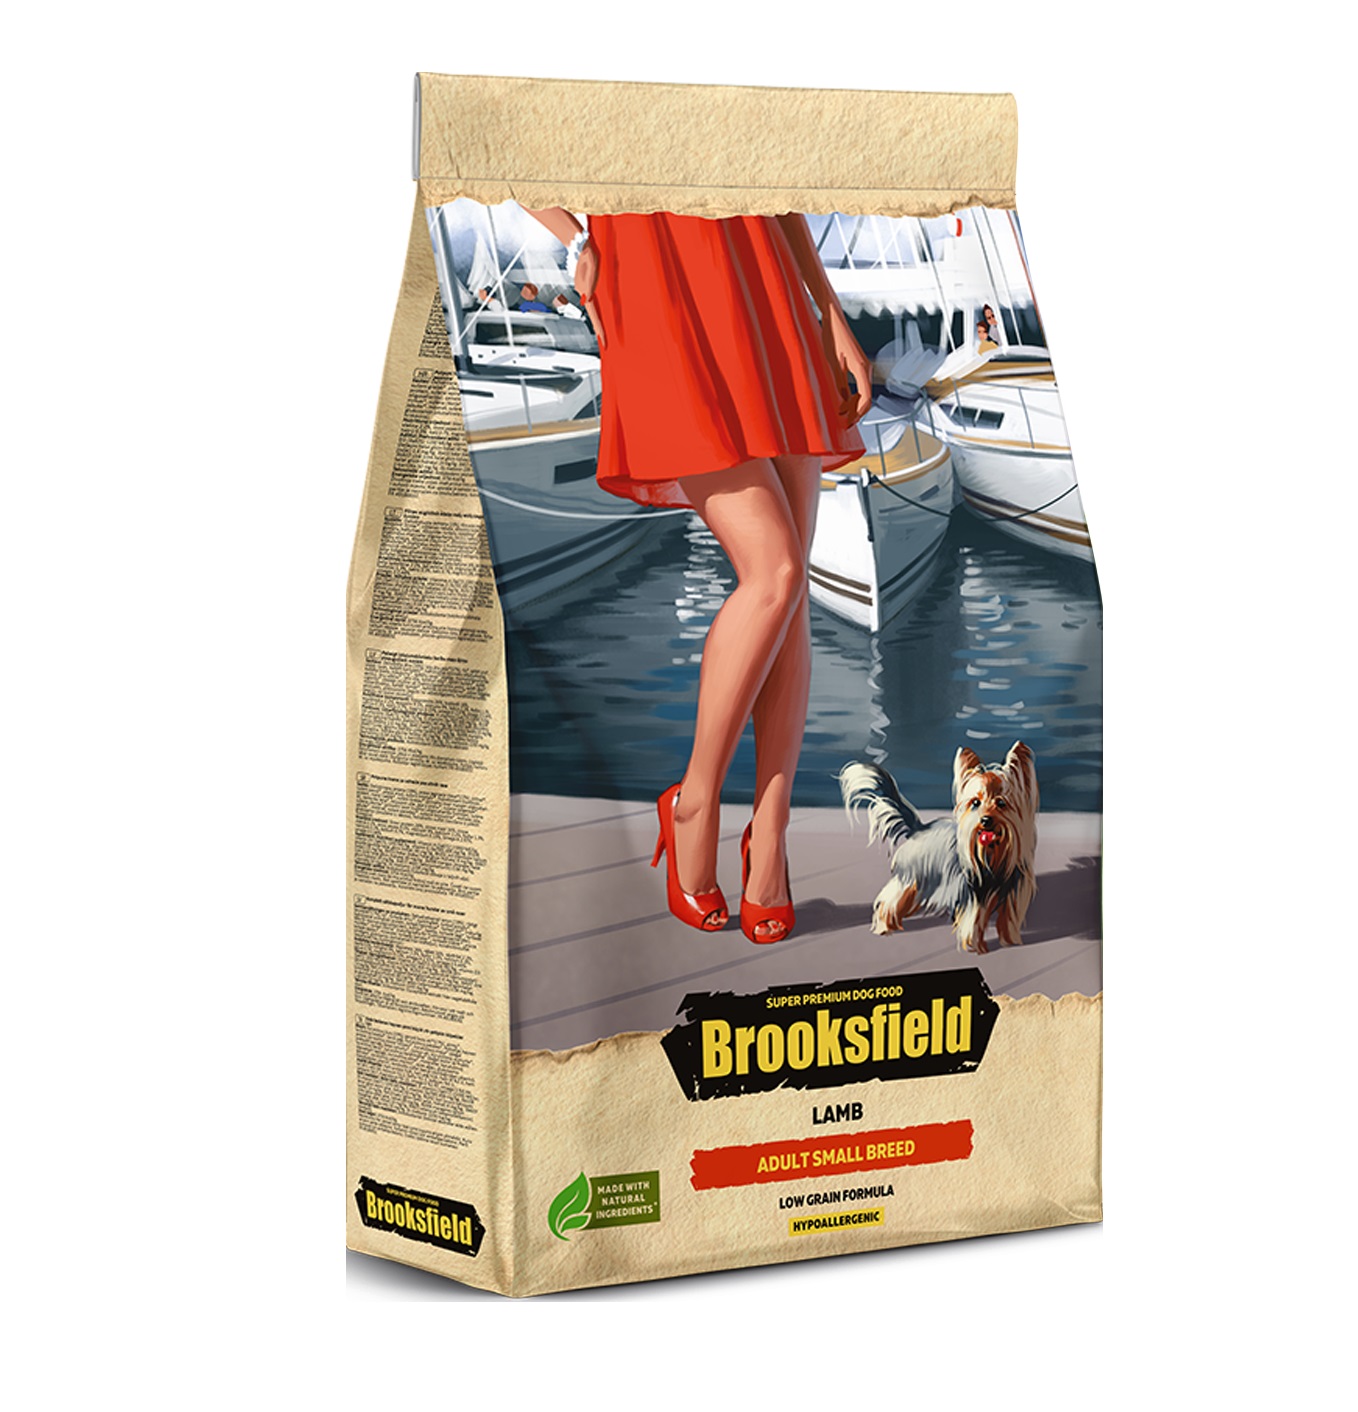 Бруксфилд 700гр - Ягненок - для Мелких собак (Brooksfield)